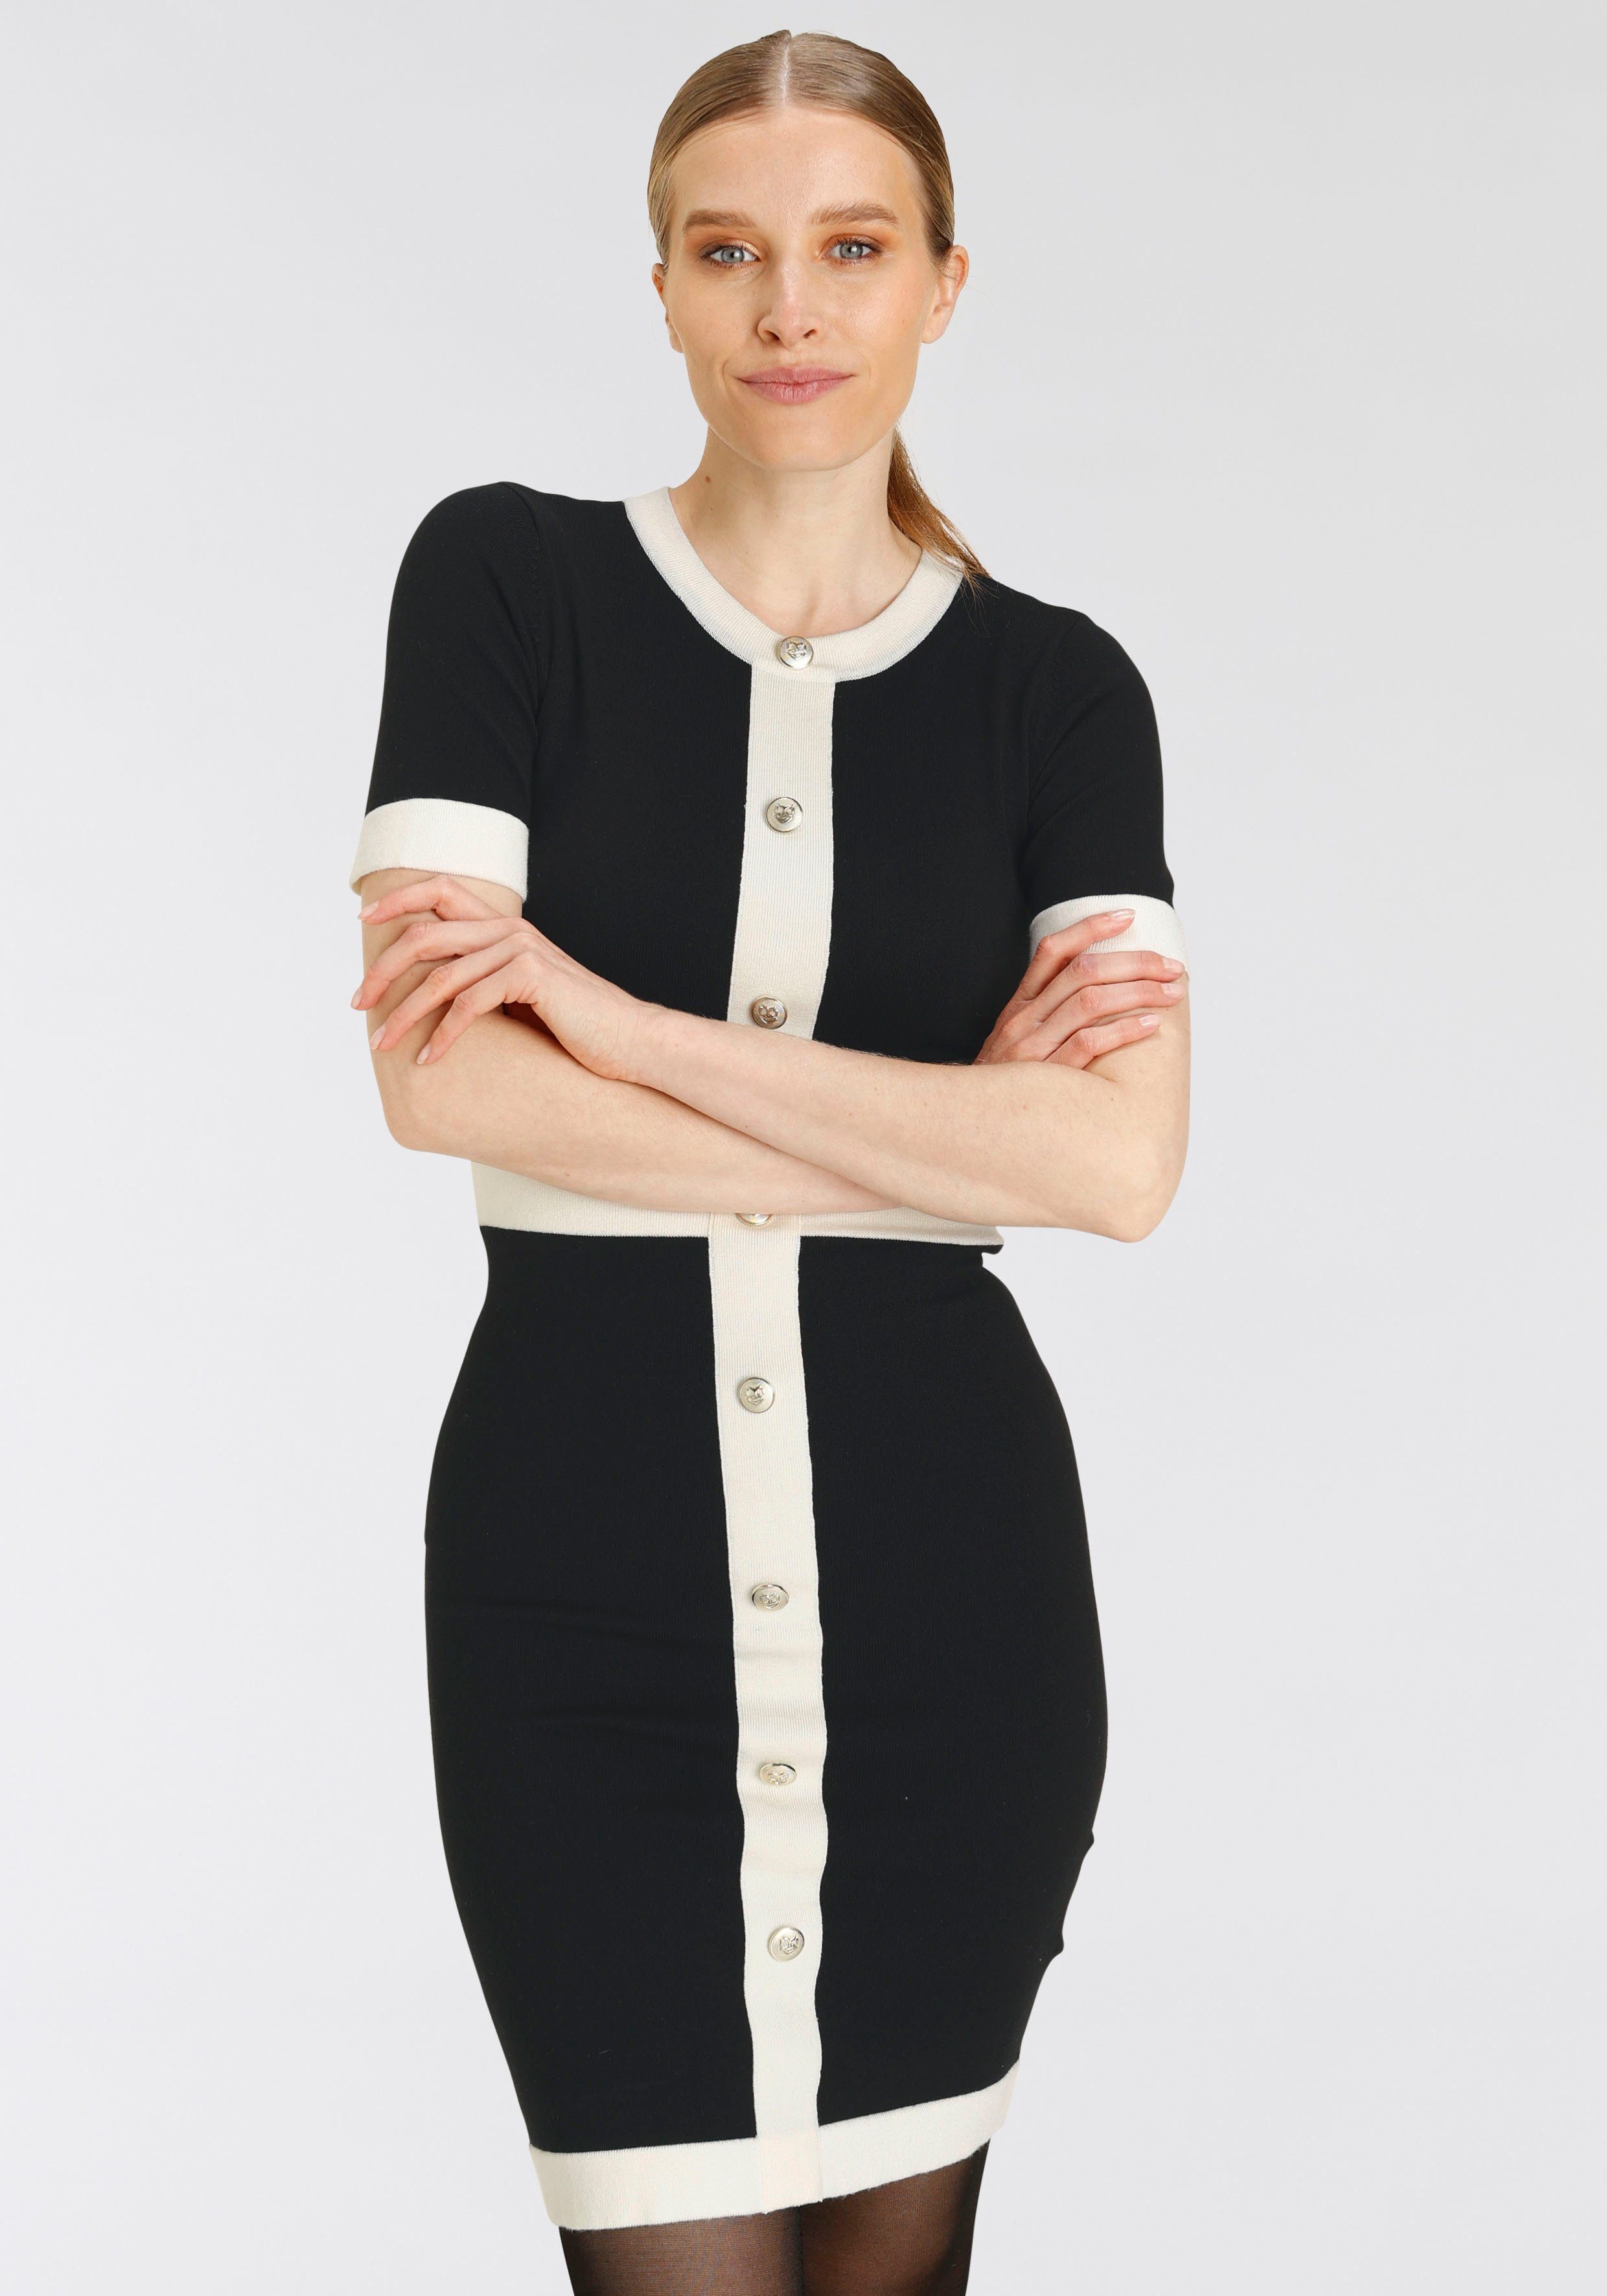 DELMAO Gebreide jurk met korte mouwen en sierknoopsluiting in franse stijl - nieuw merk!